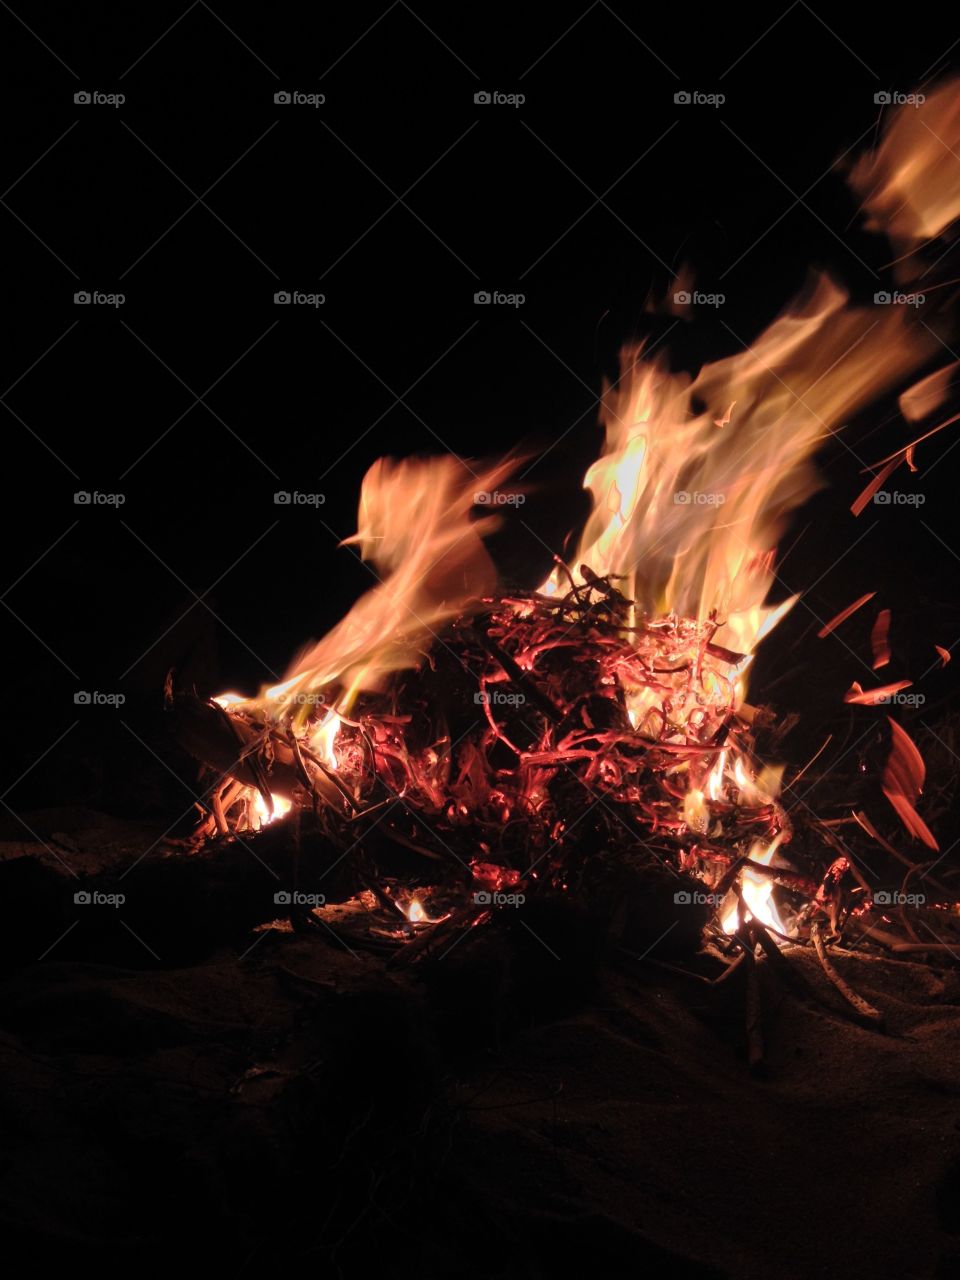 Flames of a bonfire.